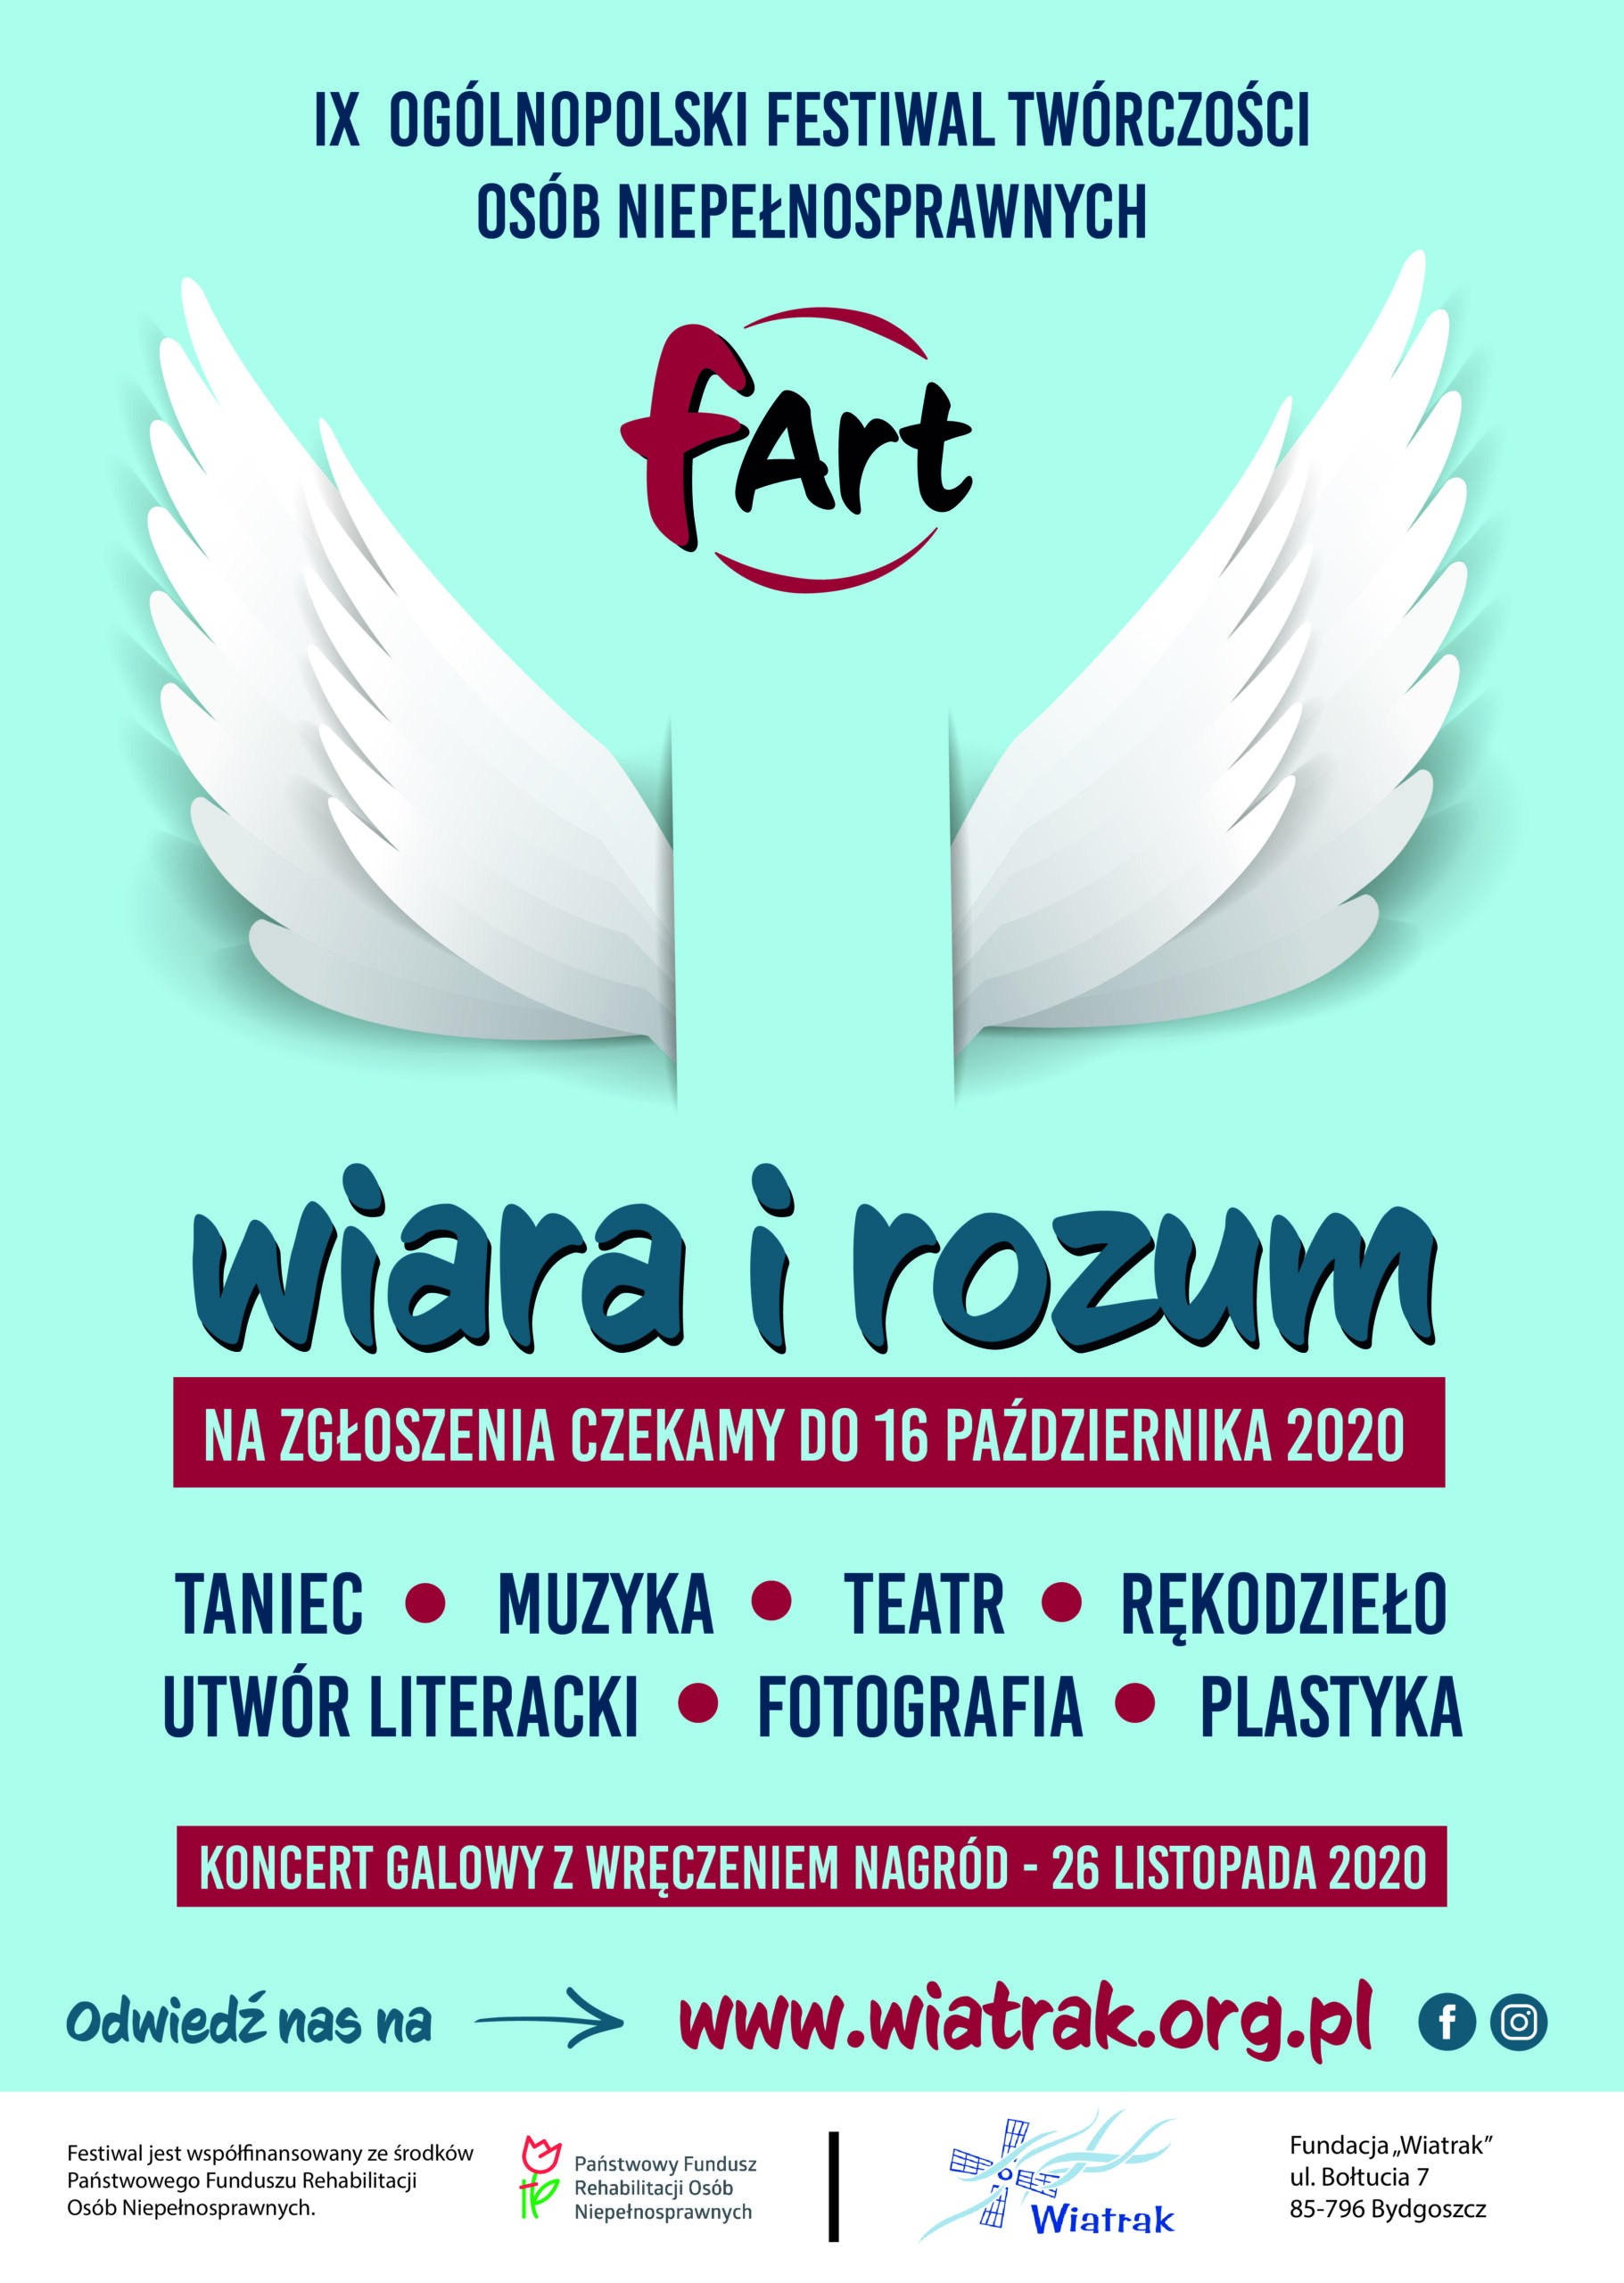 IX Ogólnopolski Festiwal Twórczości Osób Niepełnosprawnych "fART" - plakat